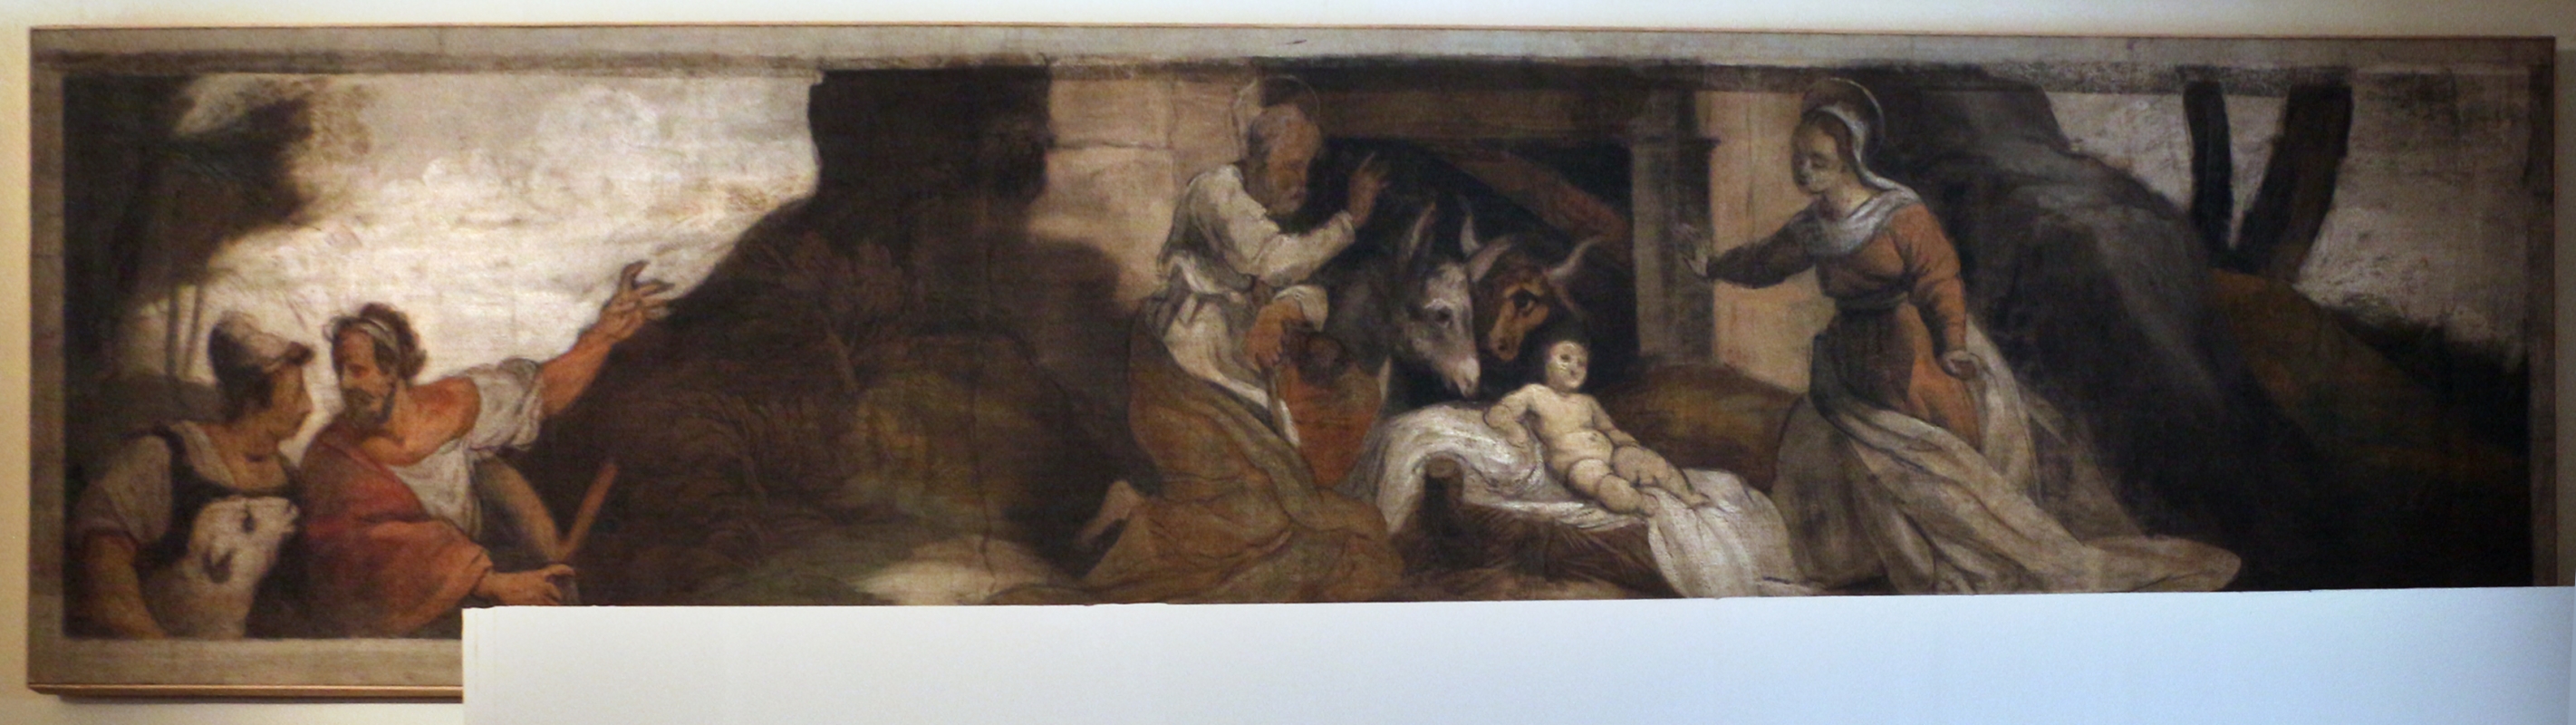 Giuseppe mazzuoli detto il bastardo, adorazione del bambino, 1579-80, dalla chiesa del gesù a ferrara 01 - Sailko